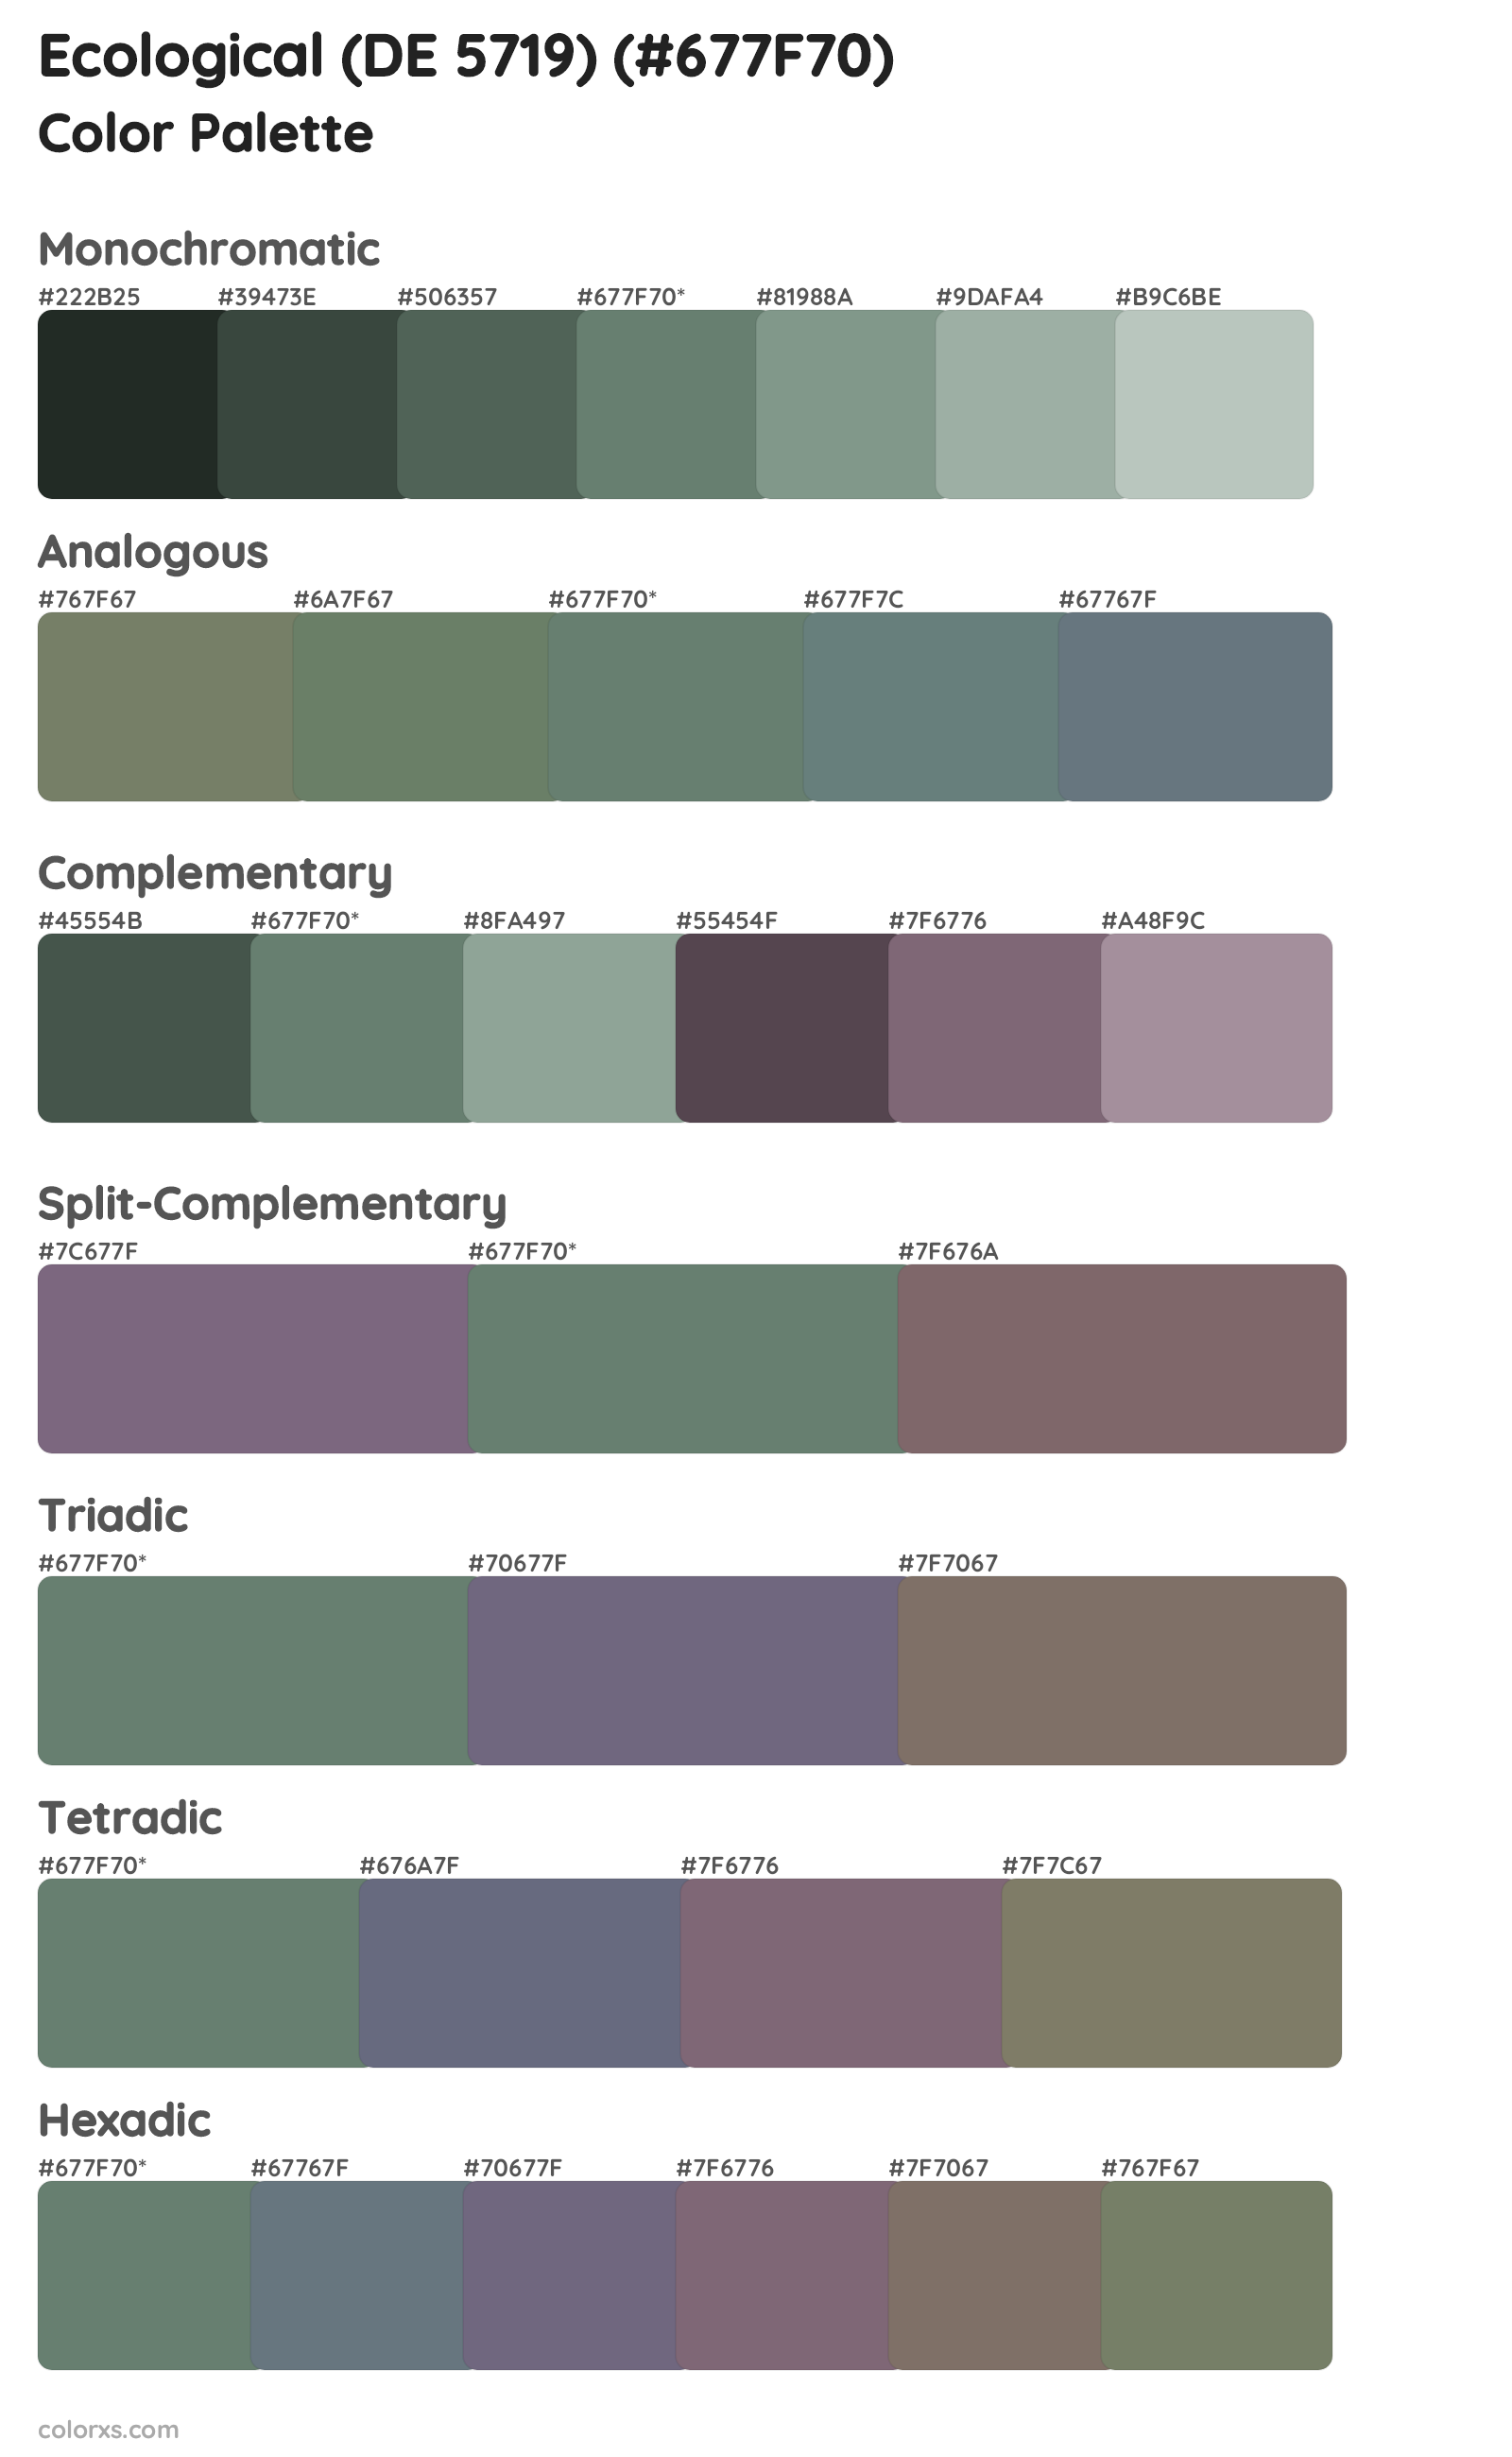 Ecological (DE 5719) Color Scheme Palettes